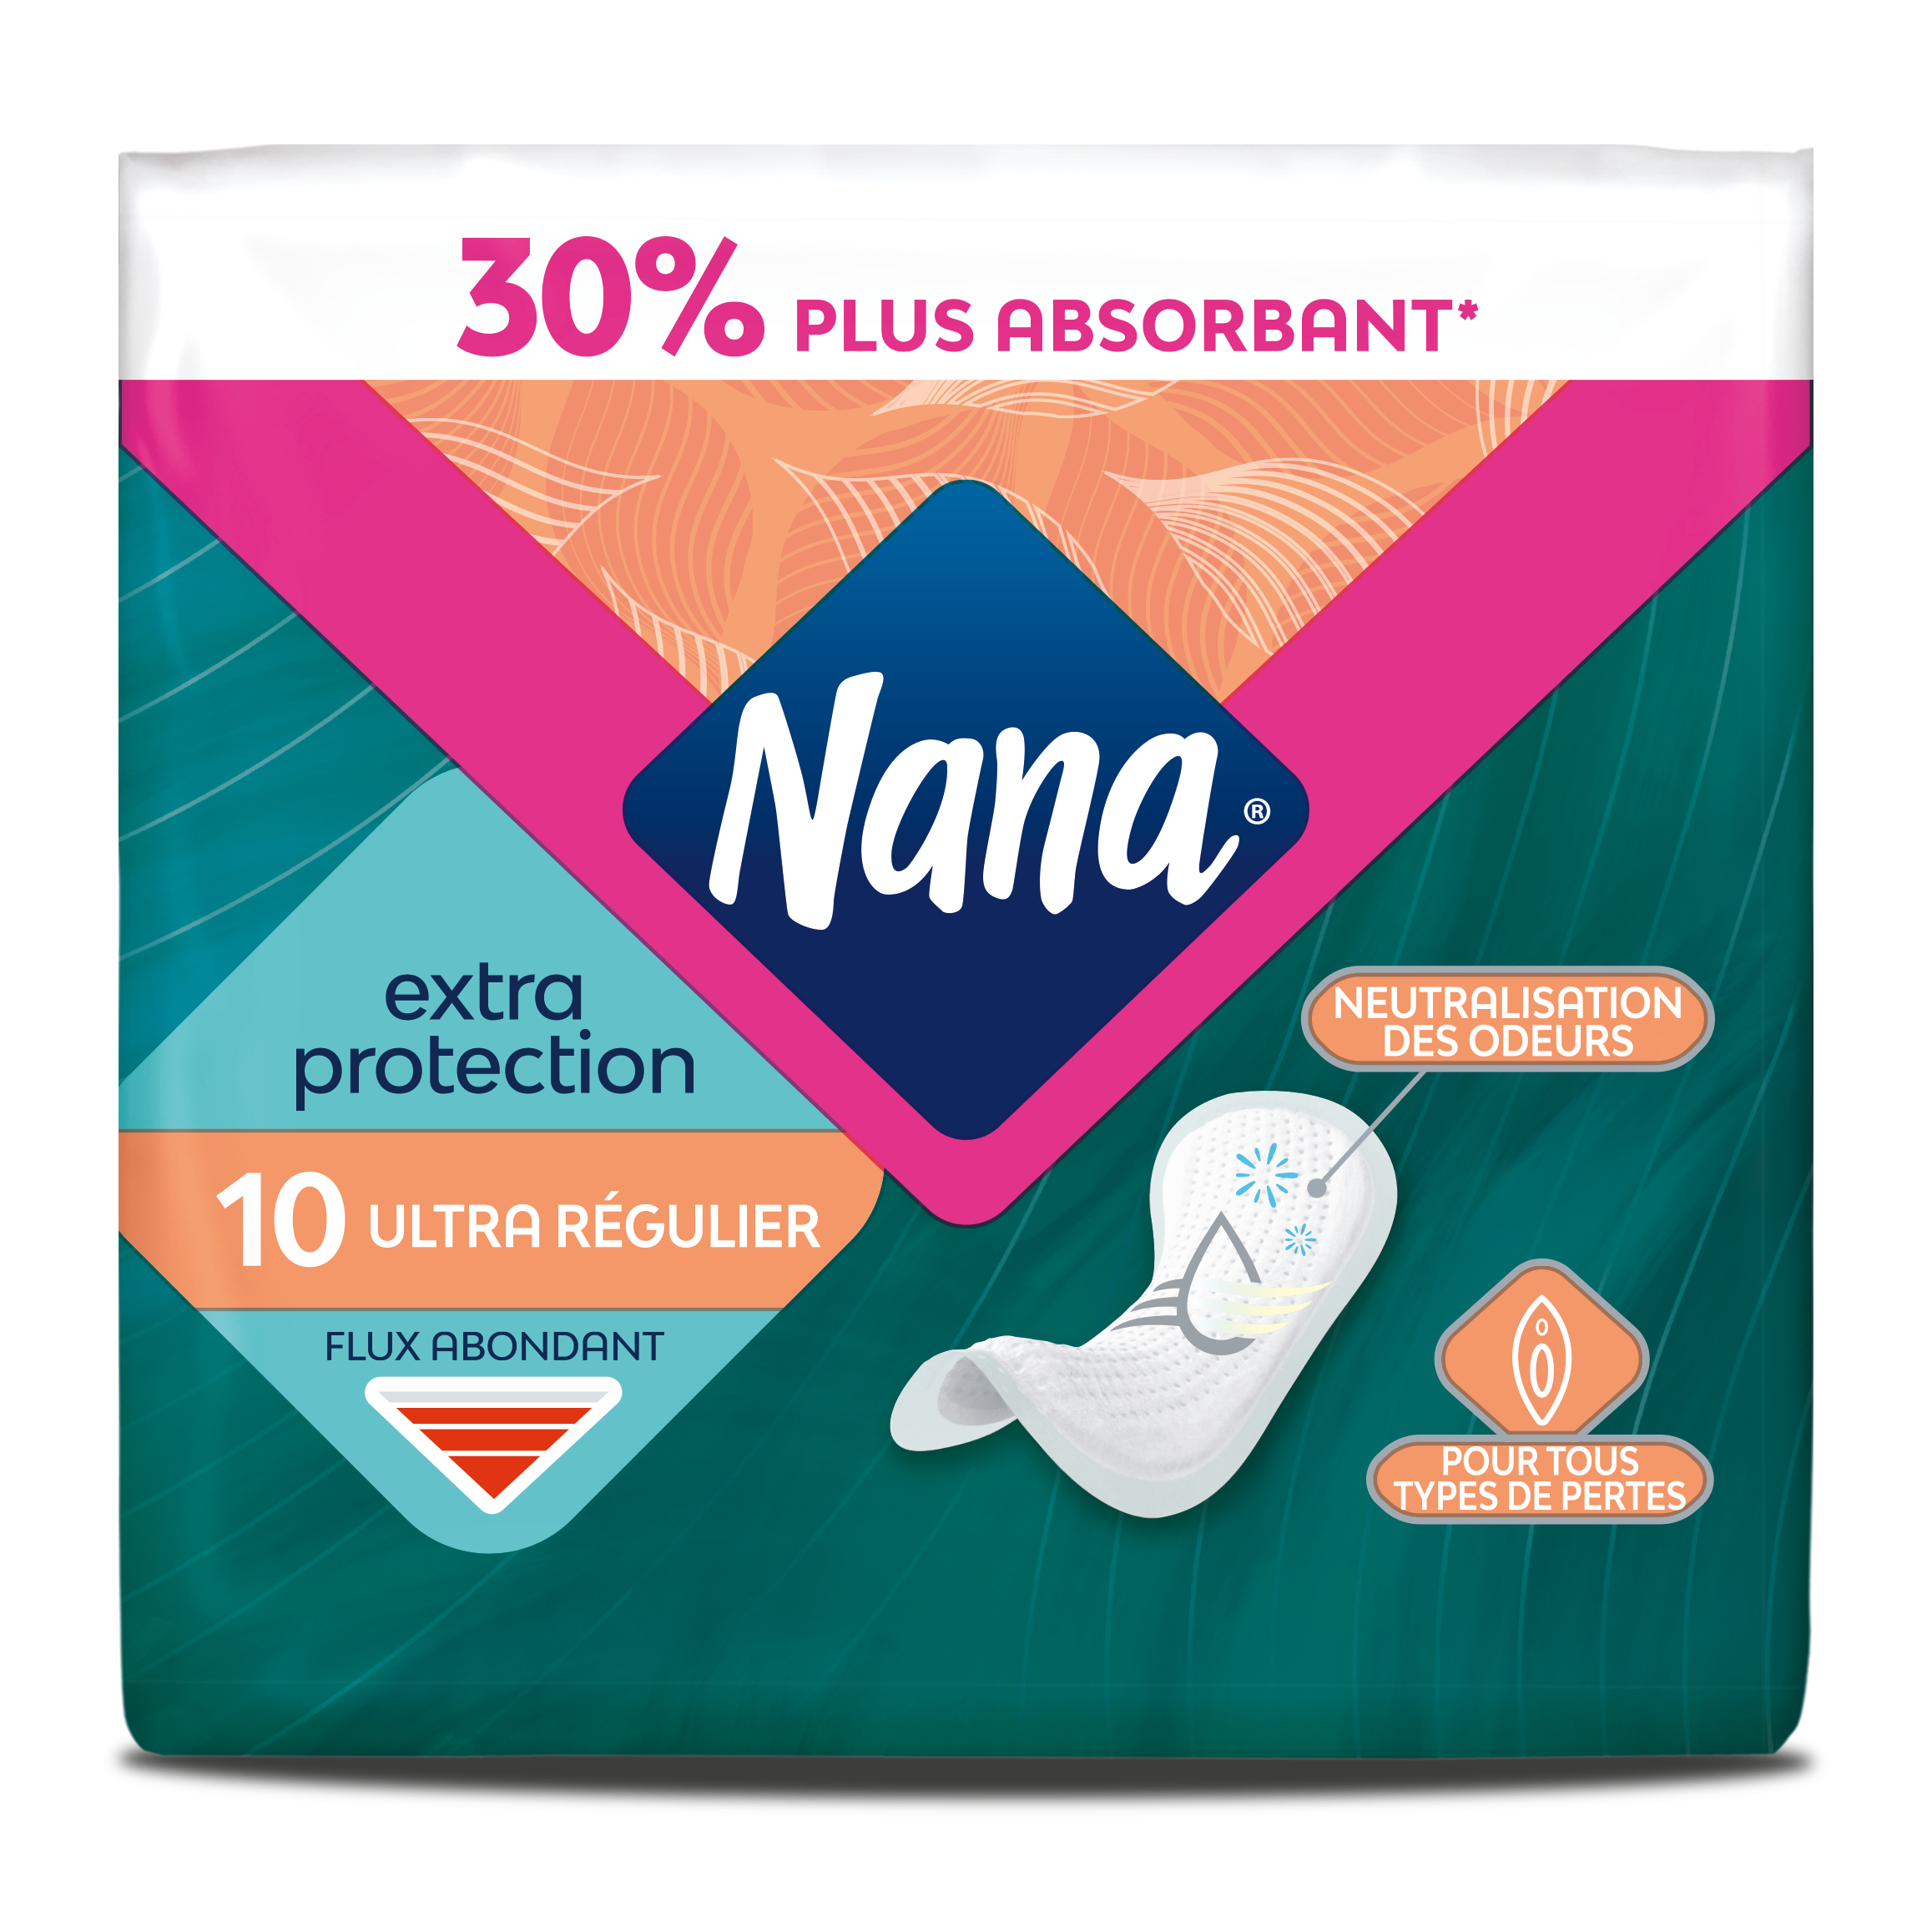 Nana Tunisie - Pour une protection ultime, choisissez les serviettes  hygiéniques Nana qui s'adaptent parfaitement aux flux et à la morphologie  unique de chaque femme 😊👌 #NanaCare #OdorControl